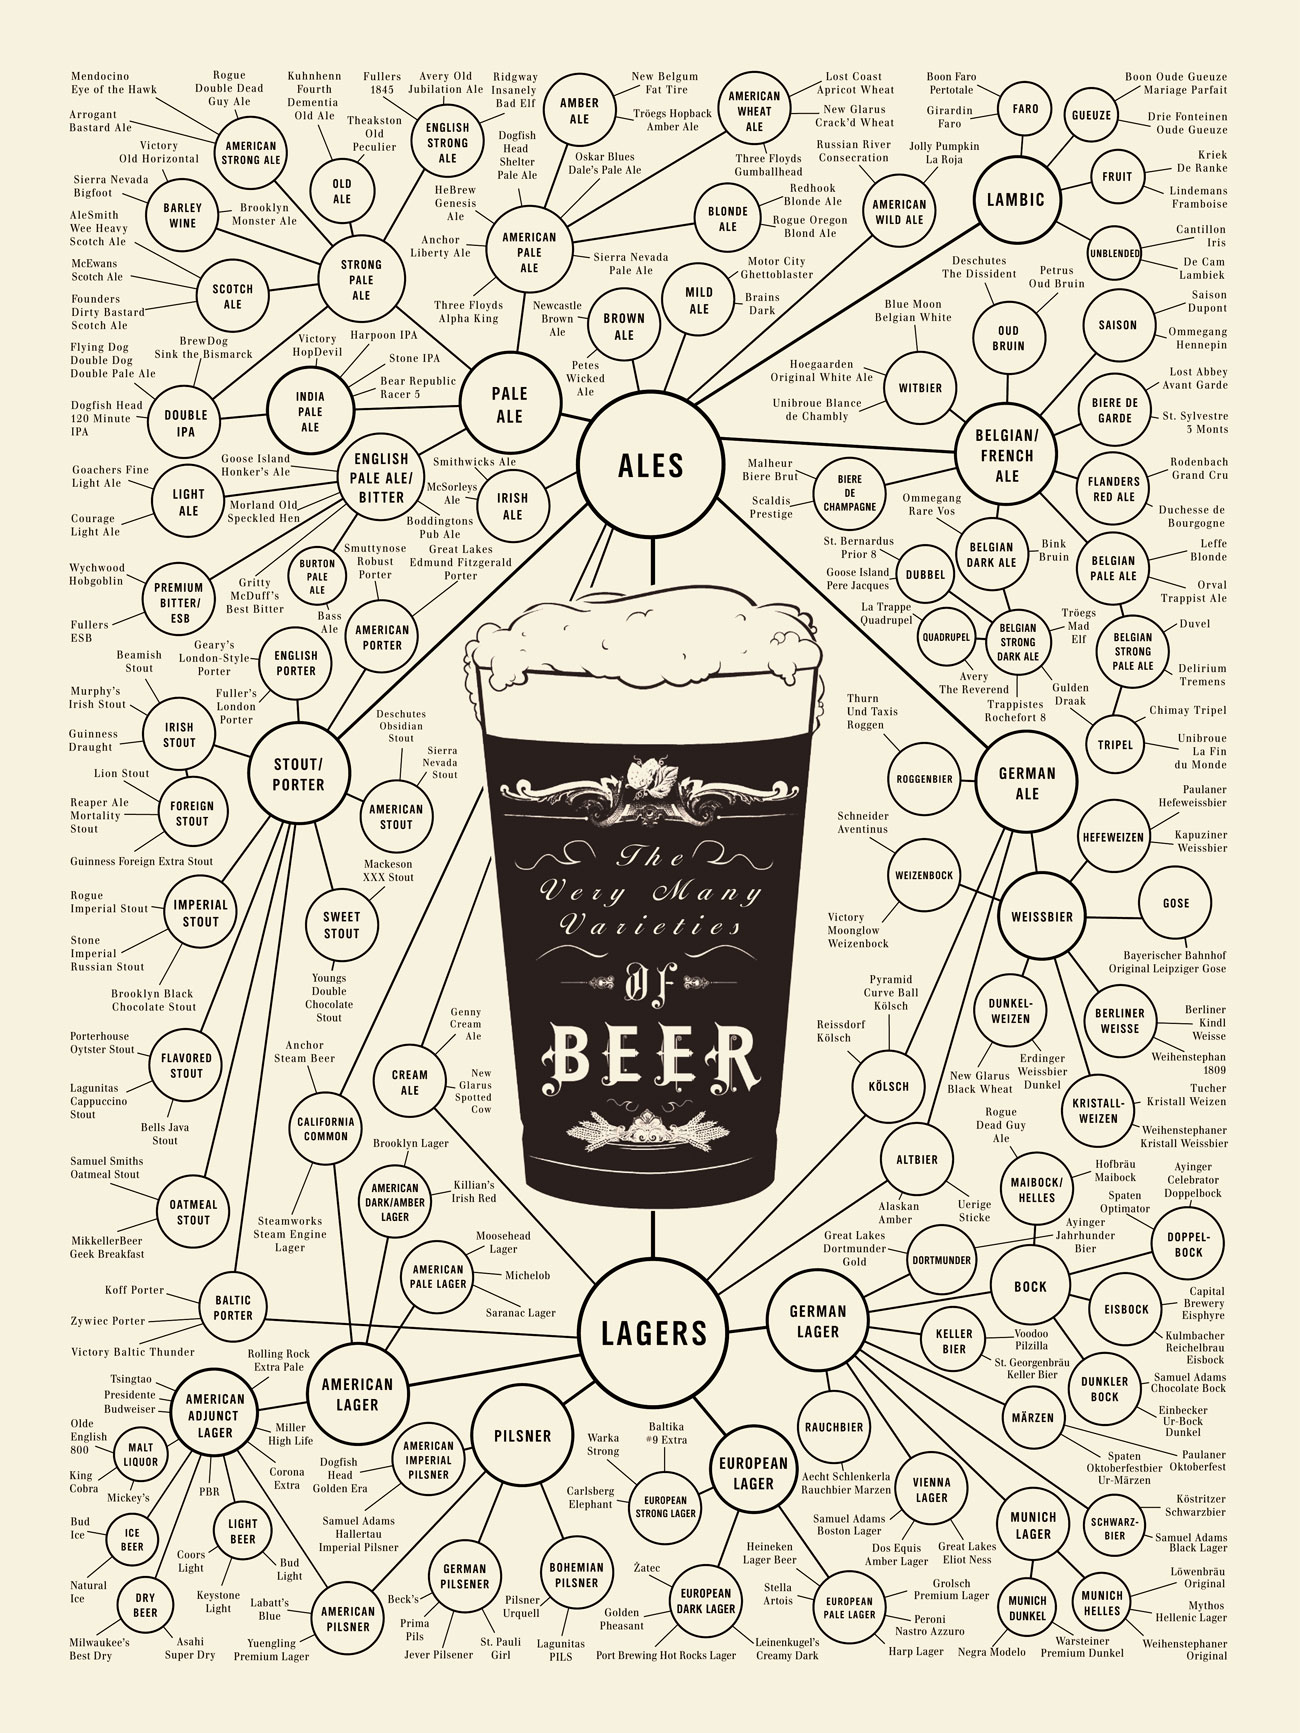 poster_beer_1300.jpg